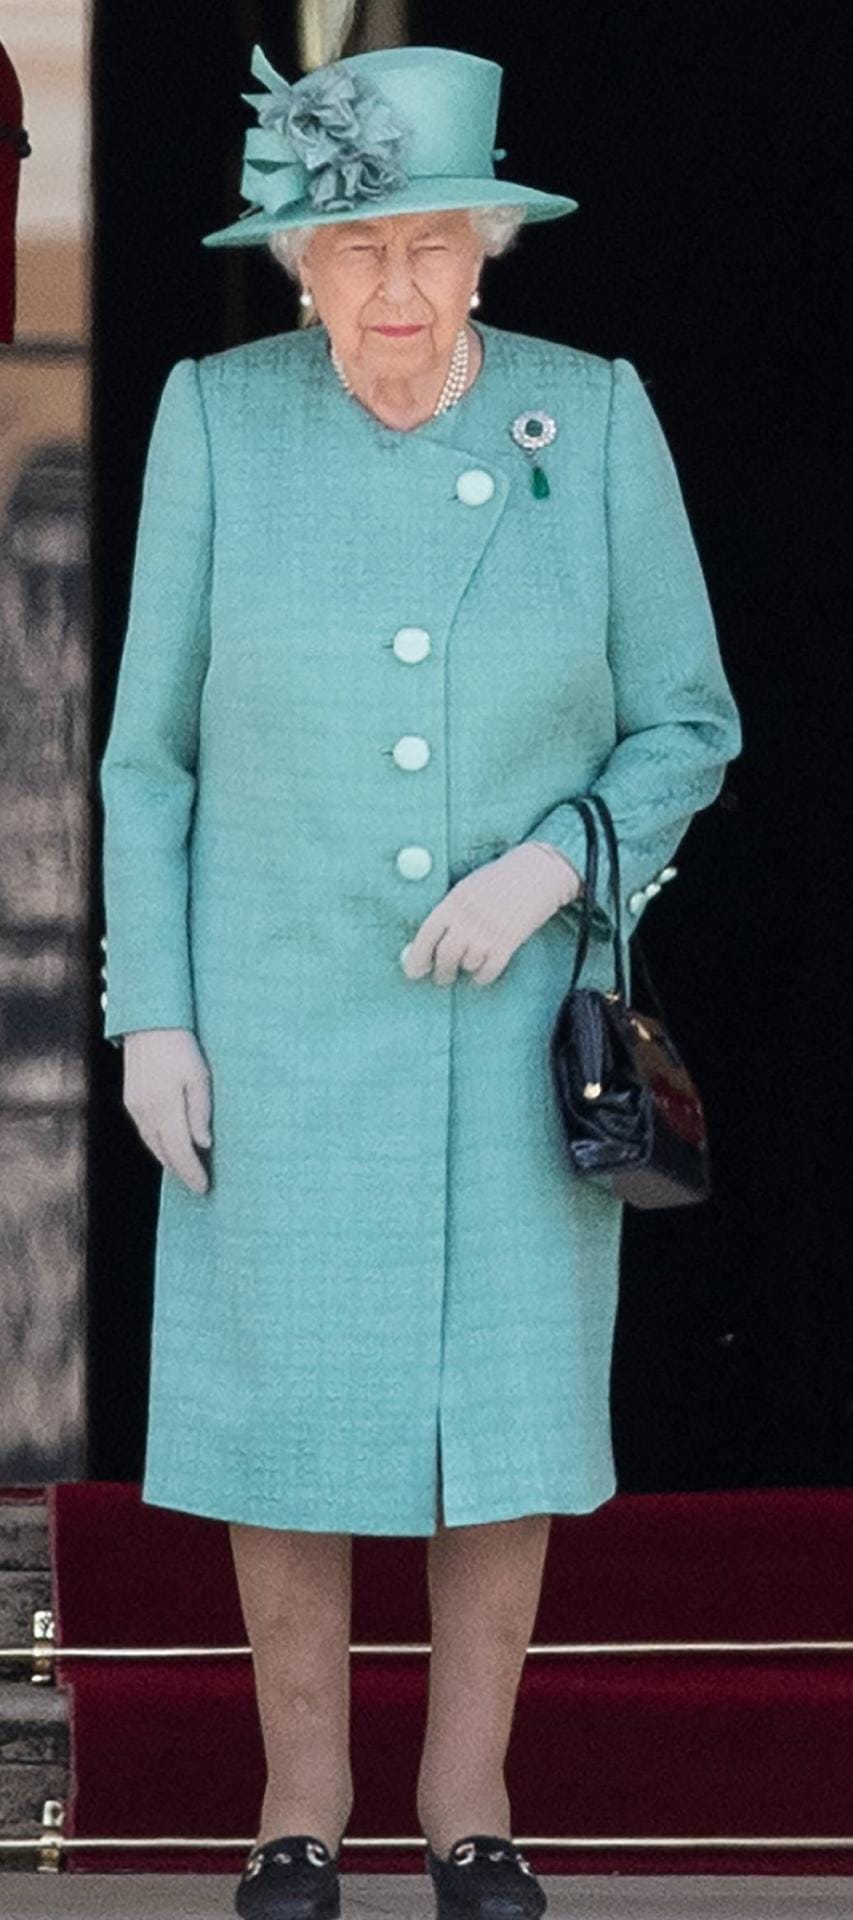 Und das hat übrigens die Queen getragen: Queen Elisabeth setzt beim Empfang vor dem Buckingham Palast auf ein mintgrünes Kostüm mit passendem Hut.